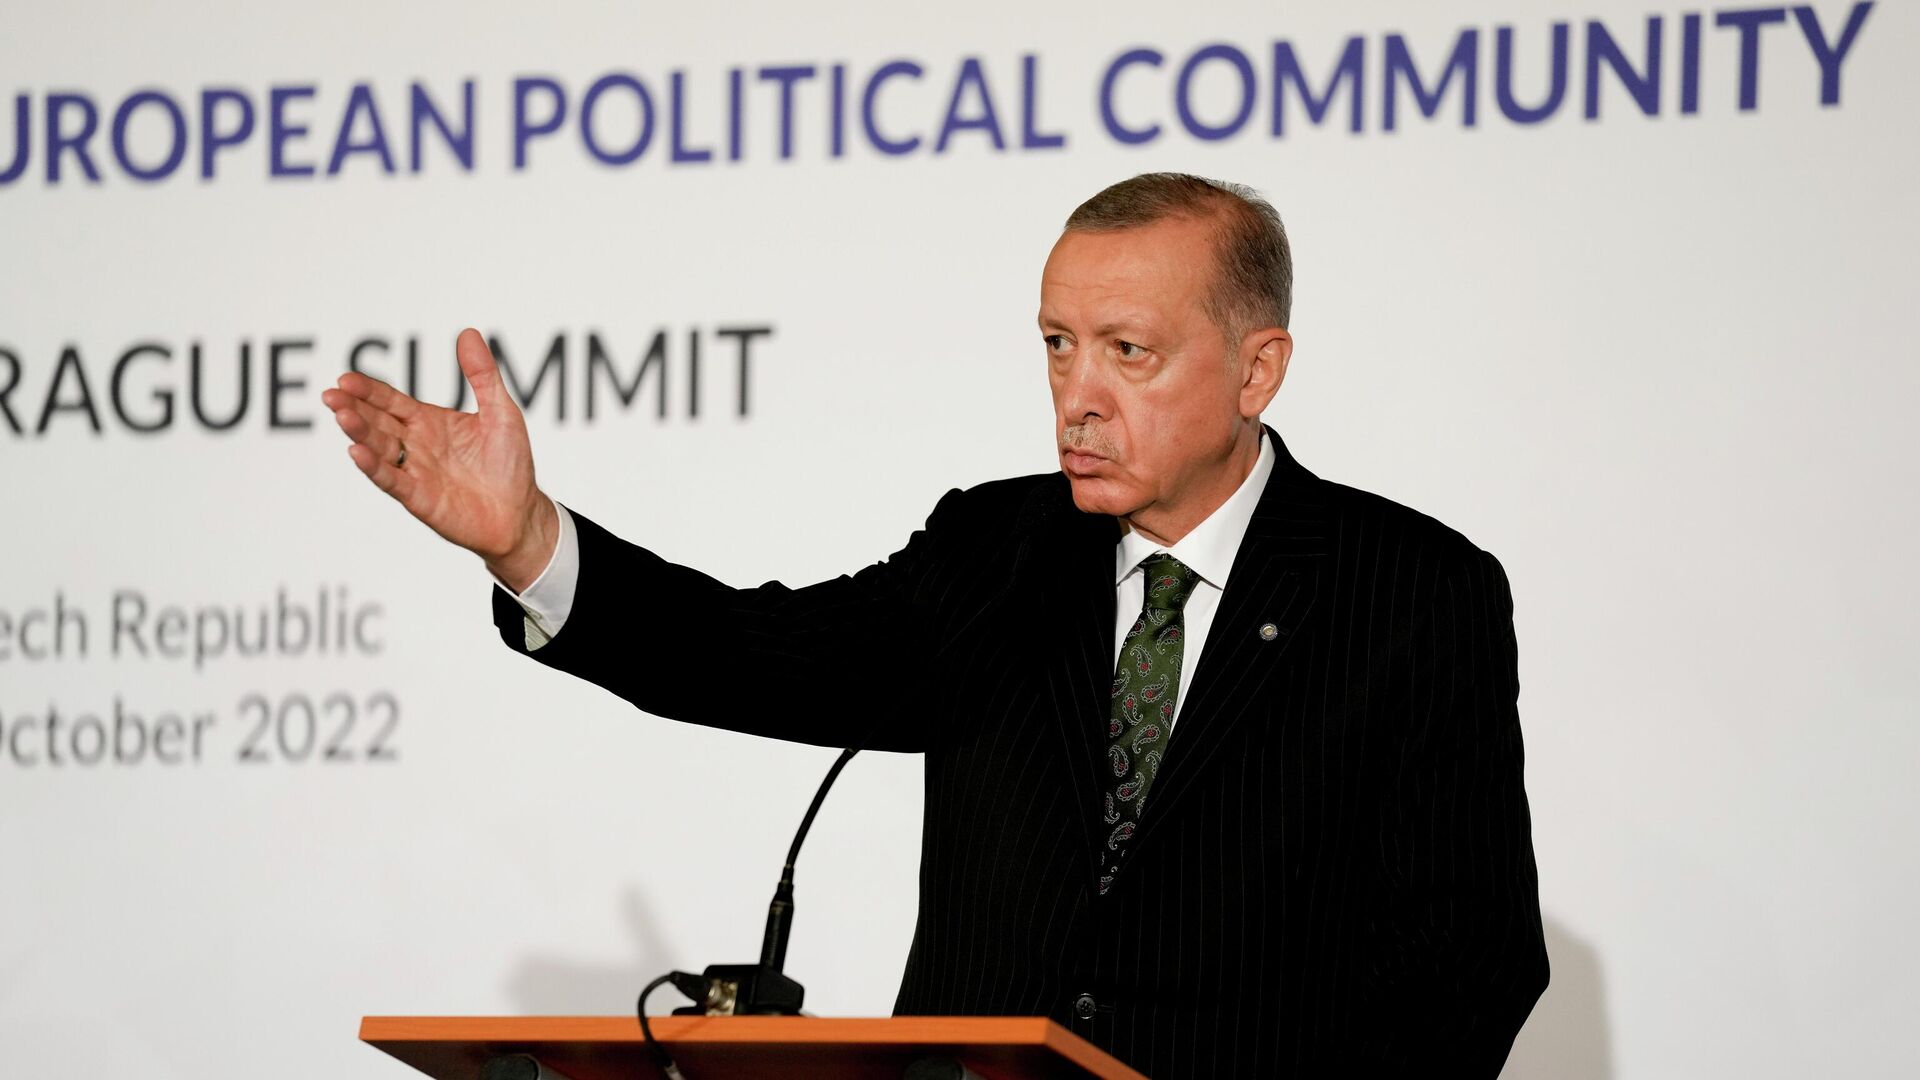 Президент Турции Реджеп Тайип Эрдоган выступает во время пресс-конференции после встречи на саммите в Праге, 6 октября 2022 года - ИноСМИ, 1920, 07.10.2022